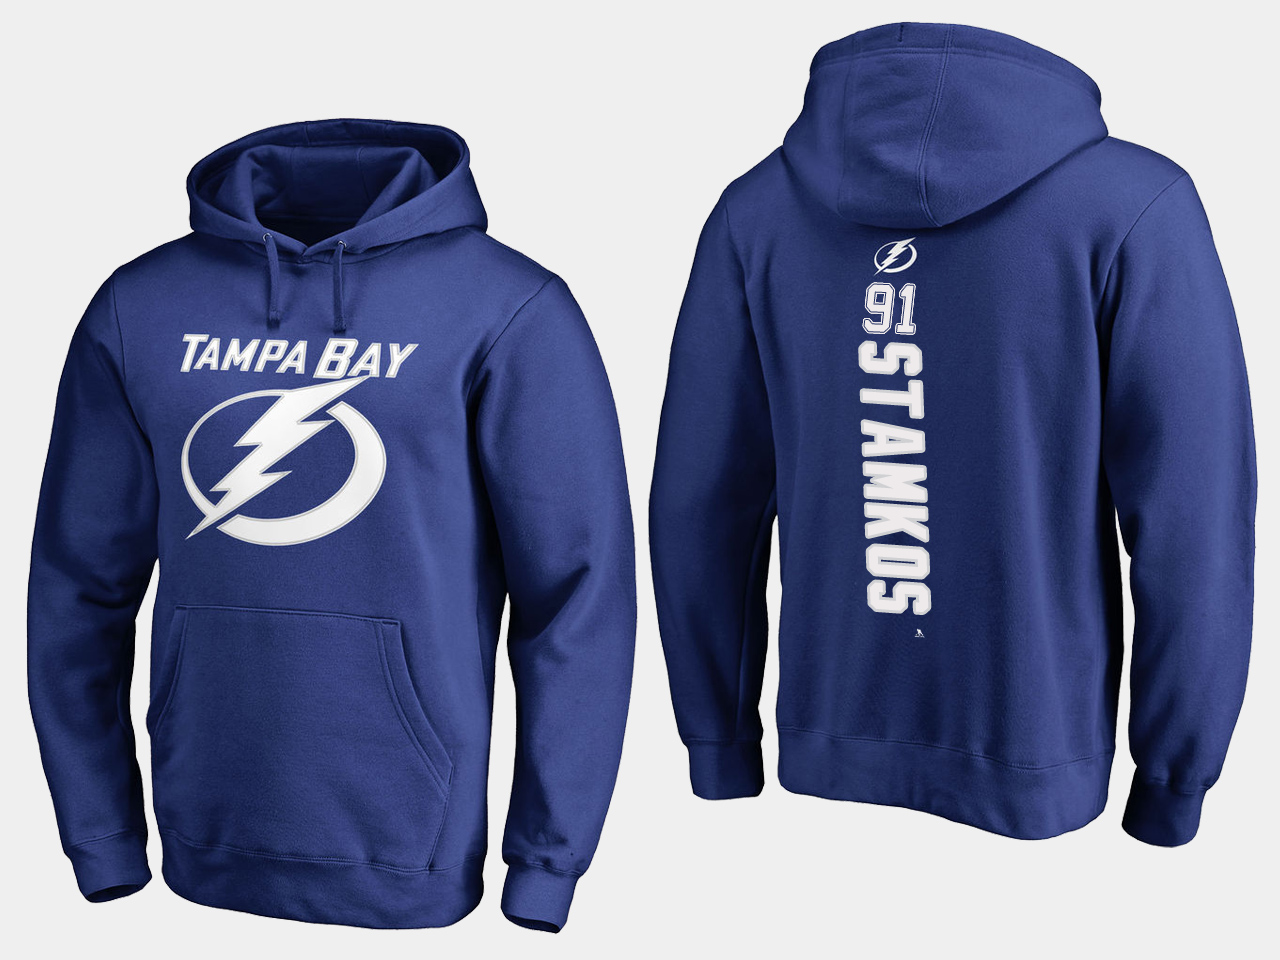 NHL Men adidas Tampa Bay Lightning 91 Stamkos blue hoodie